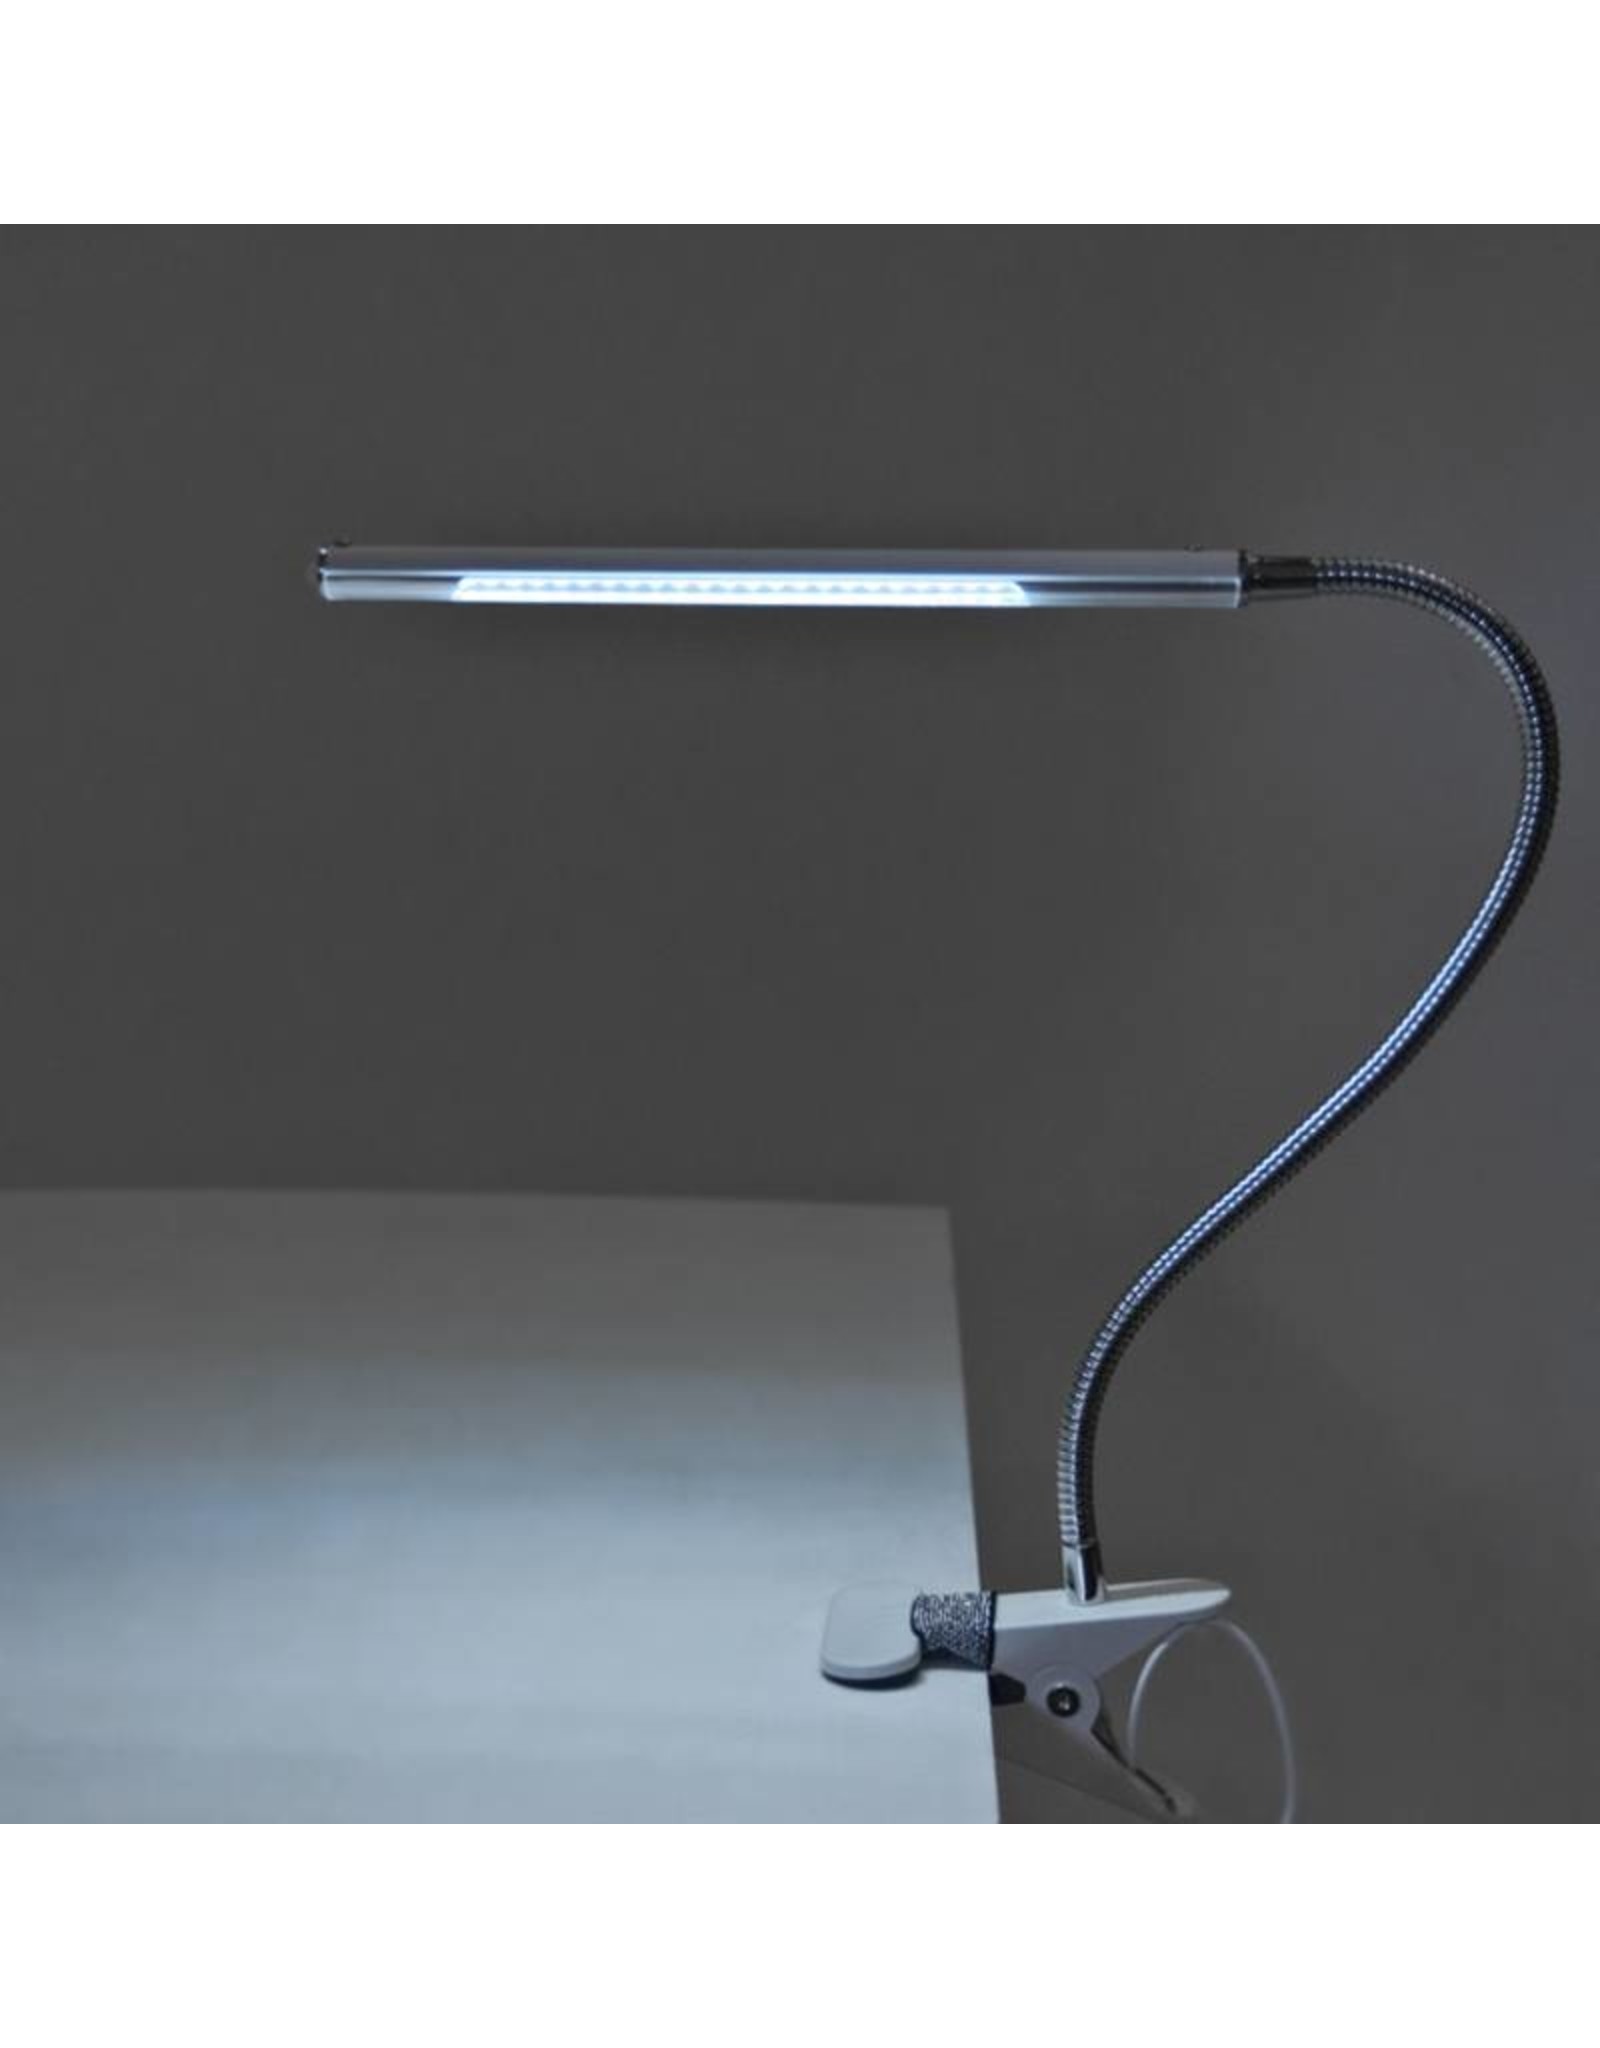 Mega Beauty Shop® LED Tafellamp Zilver met een flexibele arm op tafelklem.